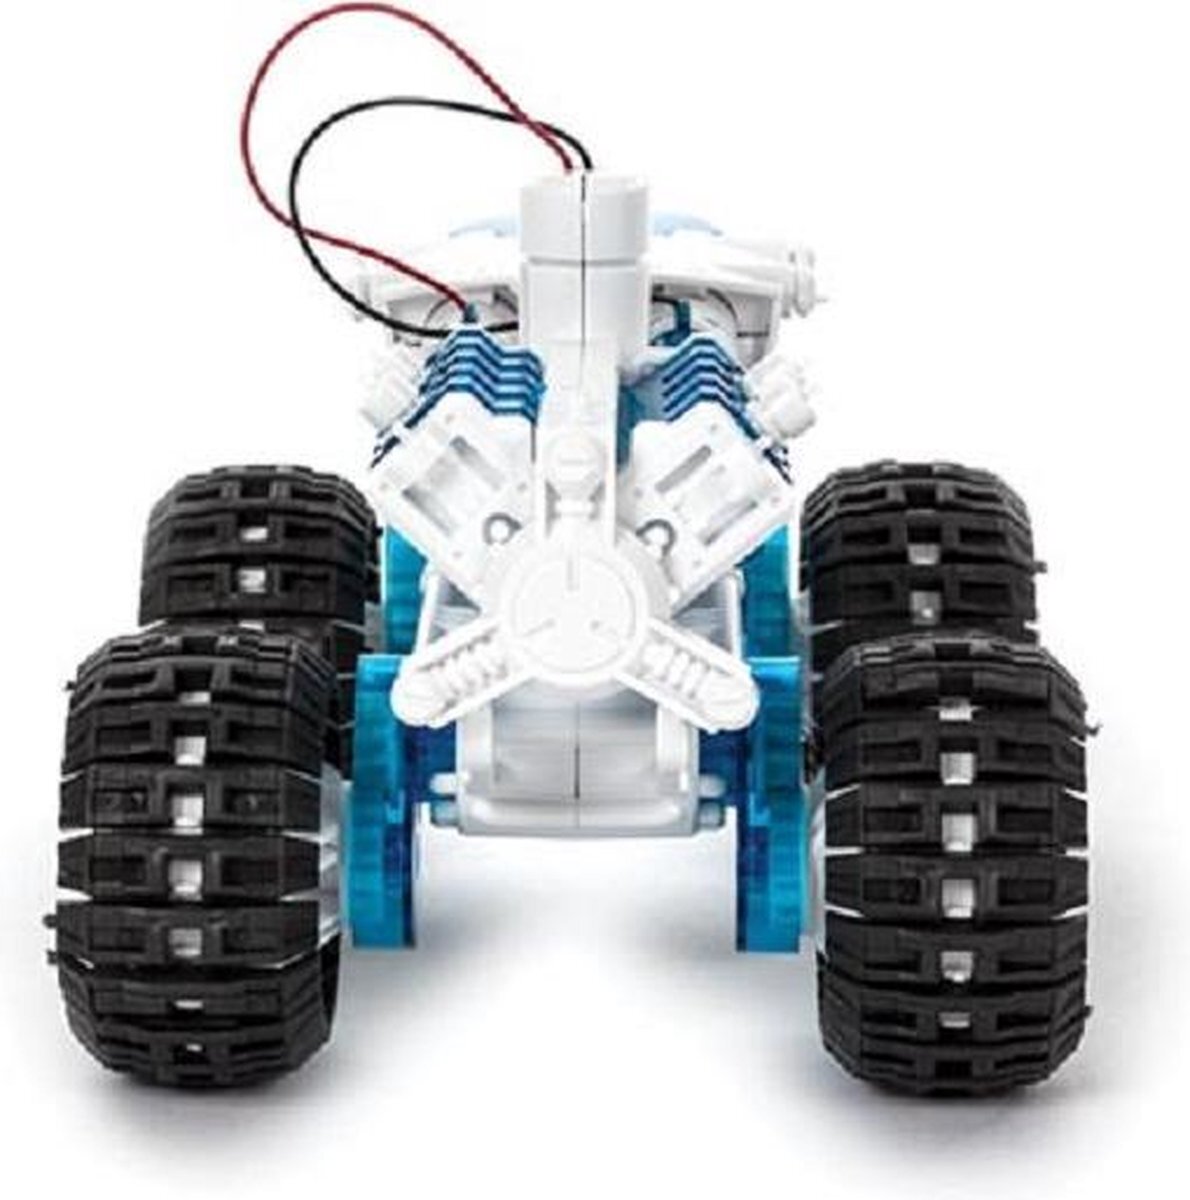 Velleman Educatieve Robot bouwkit, Bouwkit - Brandstofcelauto - Zout Water Aangedreven (KSR22) Speelgoedrobot, STEM Constructiespeelgoed